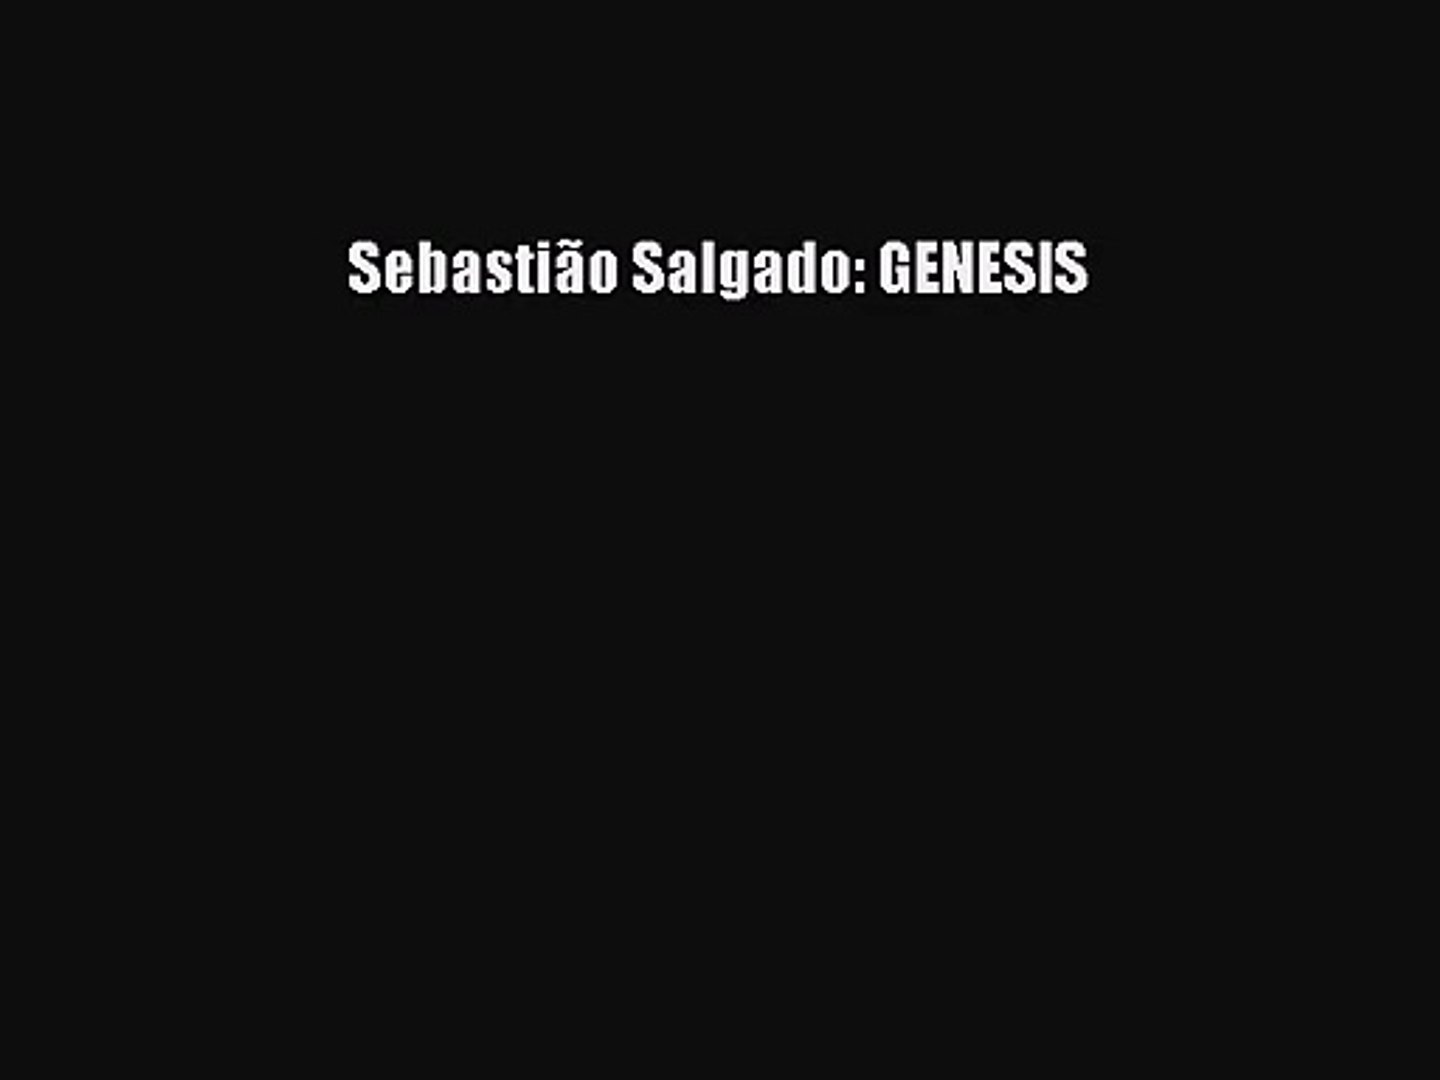 Sebastião pdf genesis salgado Sebastião Salgado: